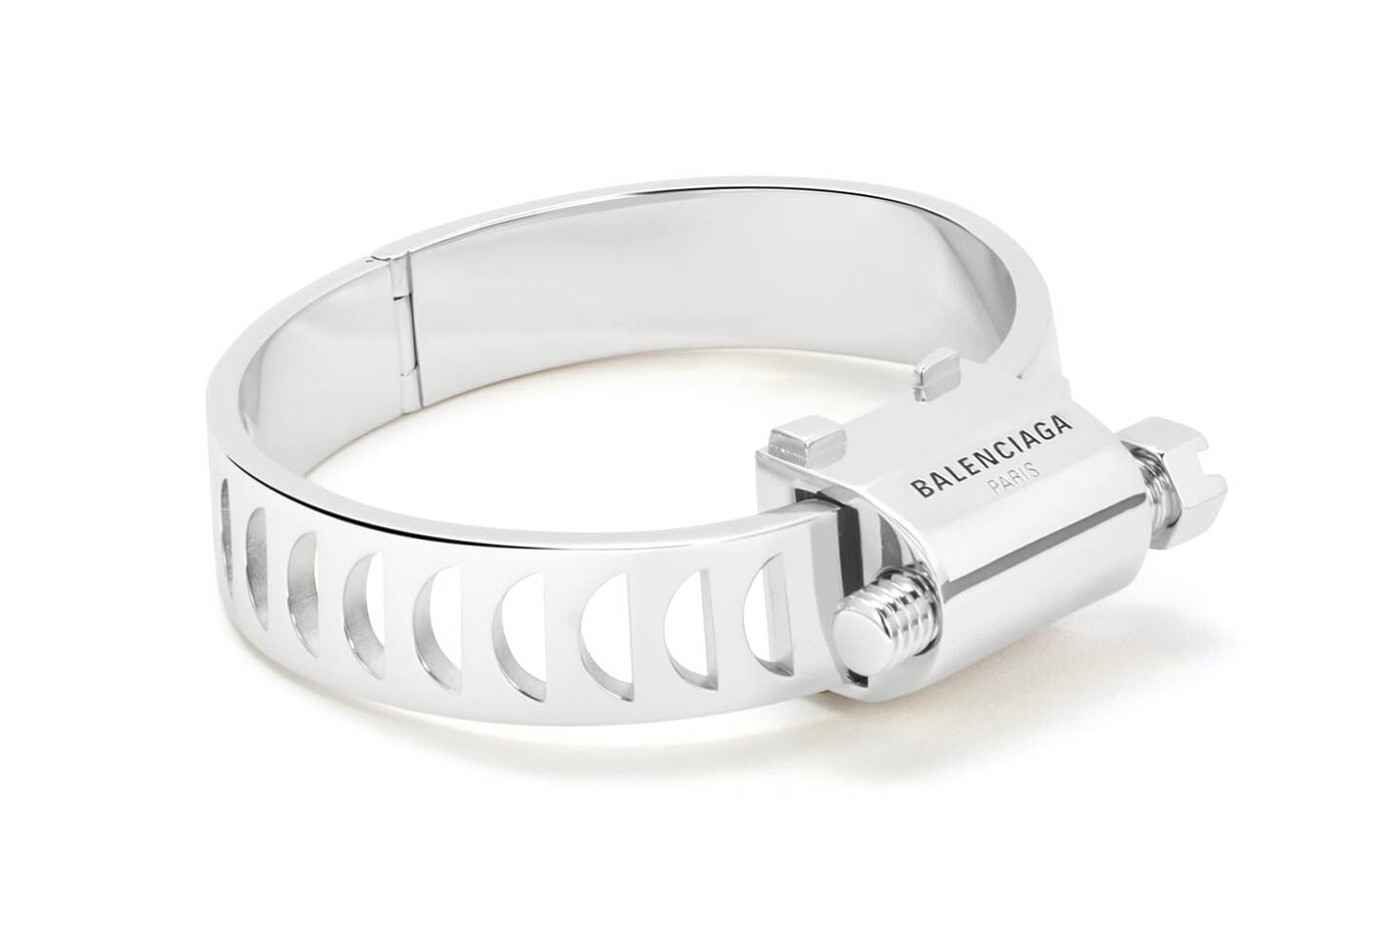 巴黎世家 Balenciaga 推出要价 $659 美金「管束」造型手环